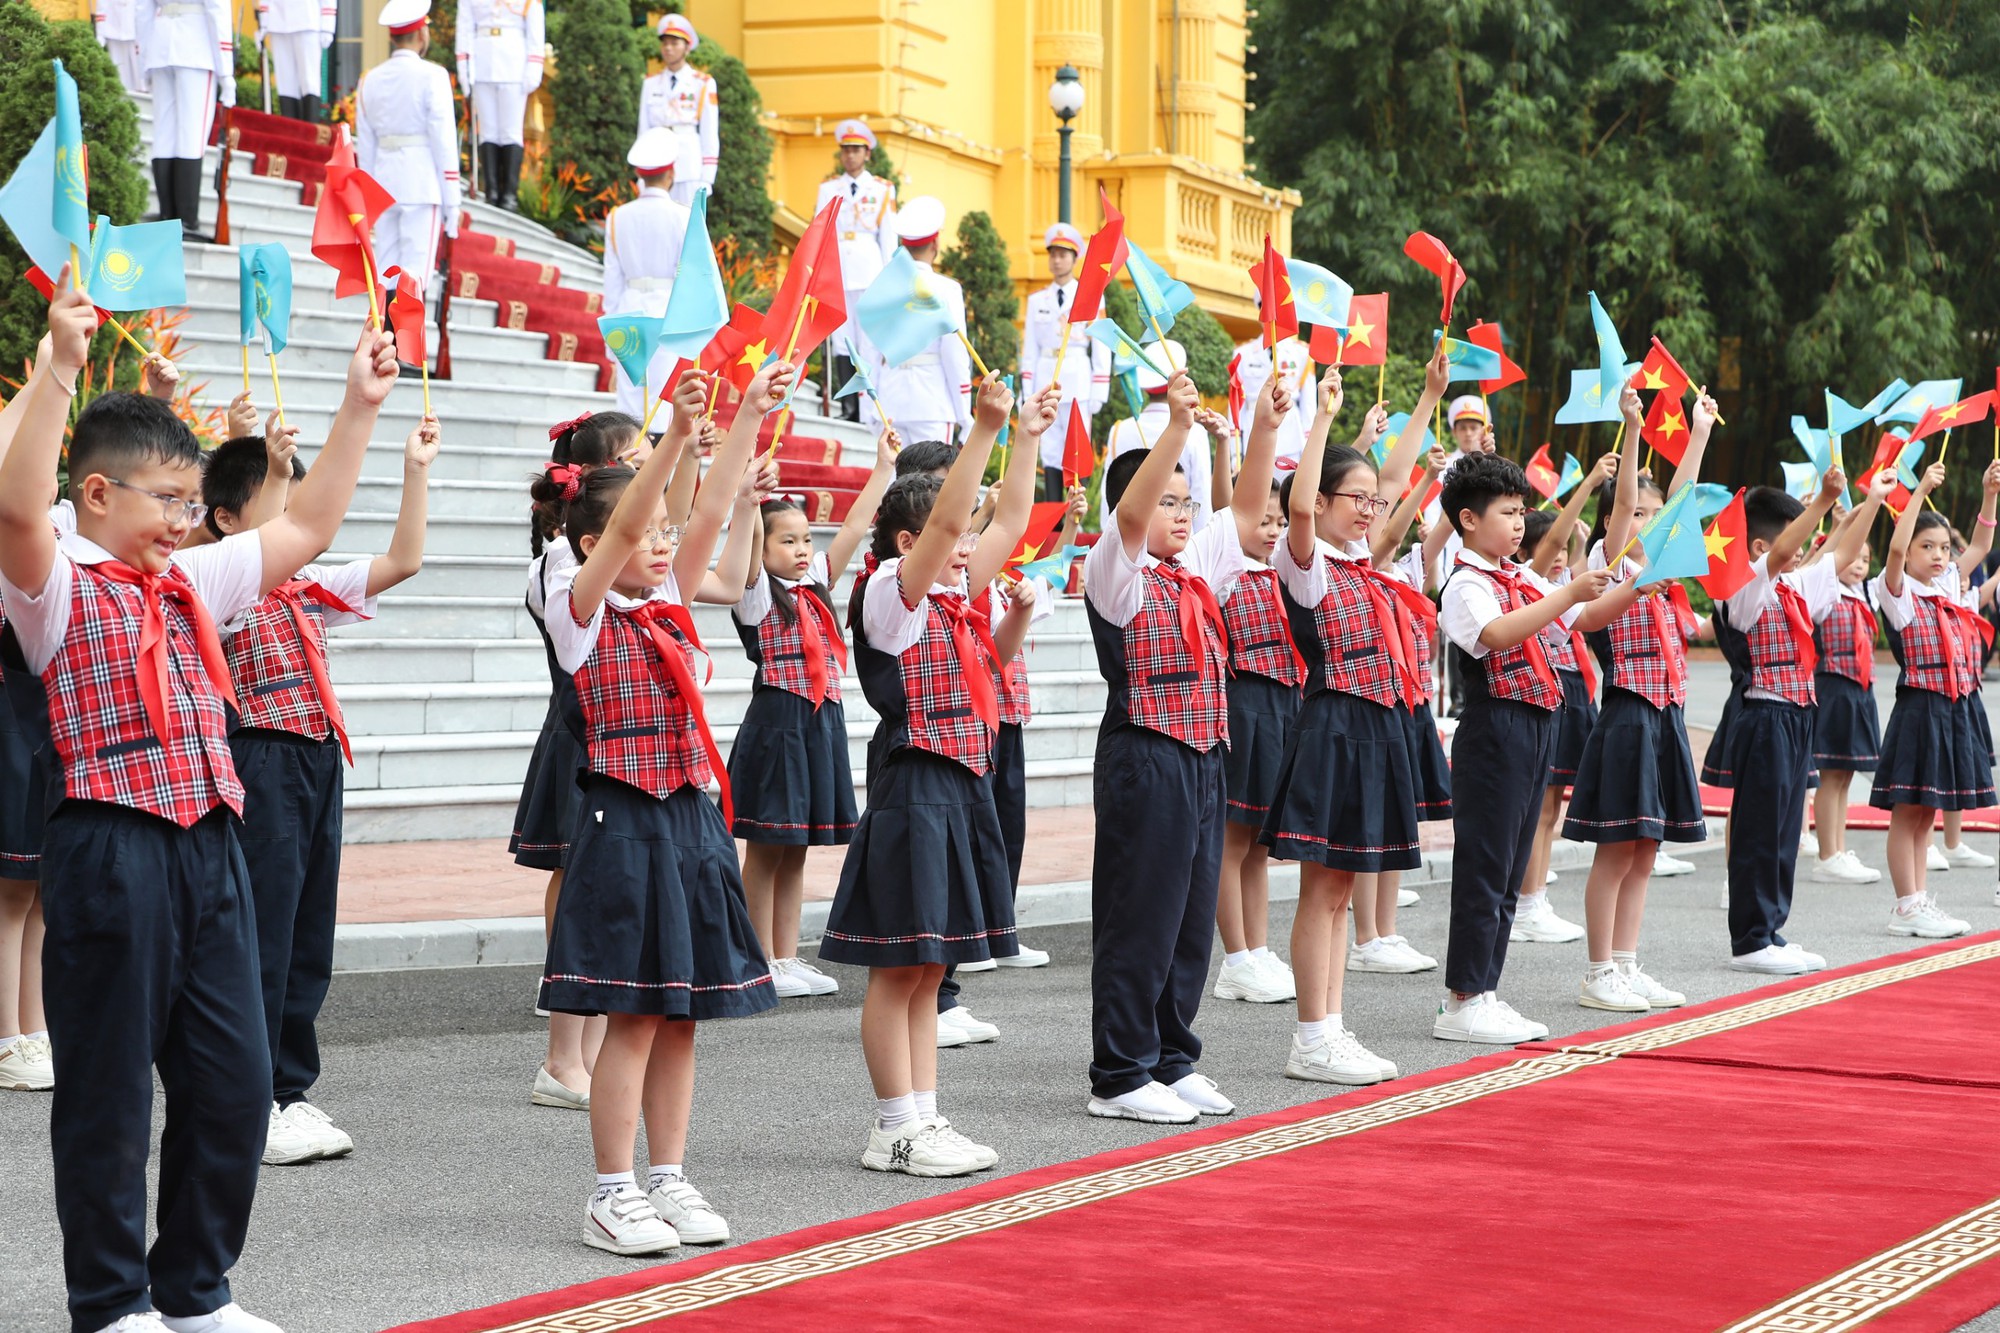 Chủ tịch nước Võ Văn Thưởng chủ trì lễ đón chính thức Tổng thống Cộng hòa Kazakhstan